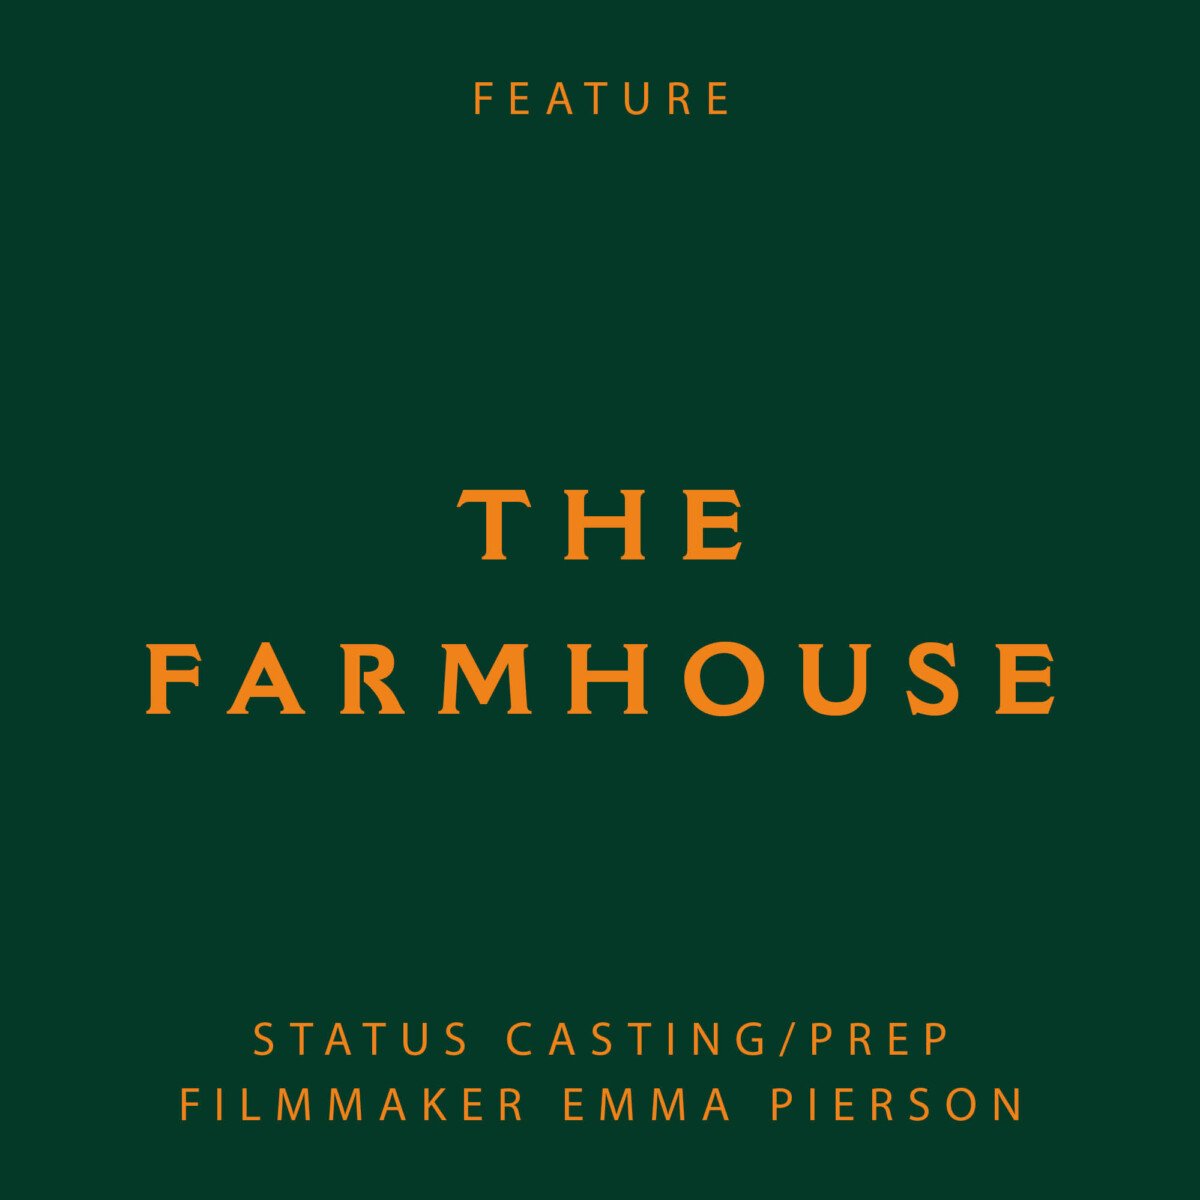 the farmhouse, Emma Pierson, Juno temple, horror film